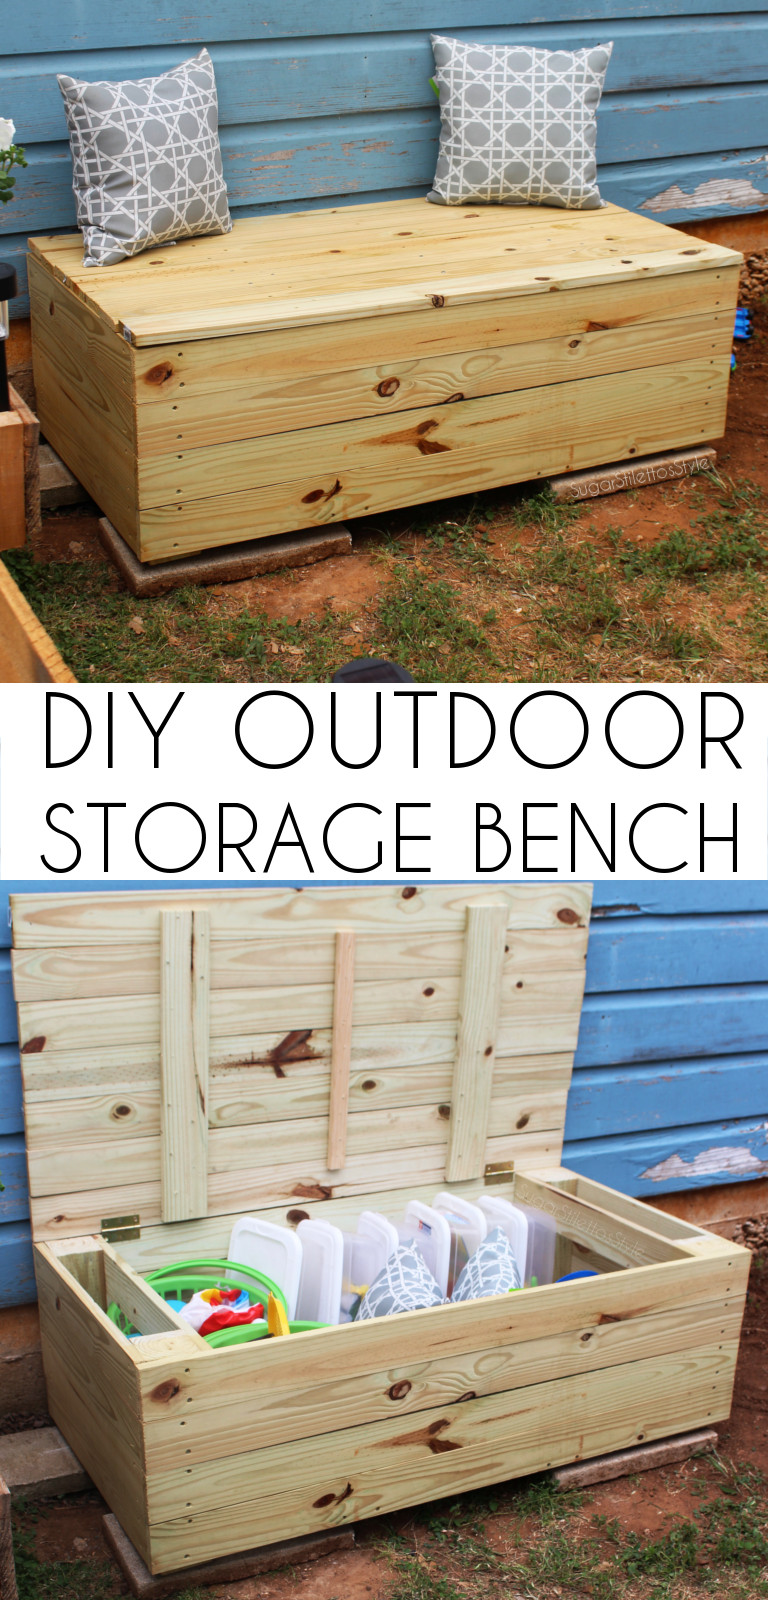 DIY Outdoor Storage Bench
 DIY Outdoor Storage Bench Shaina Glenn